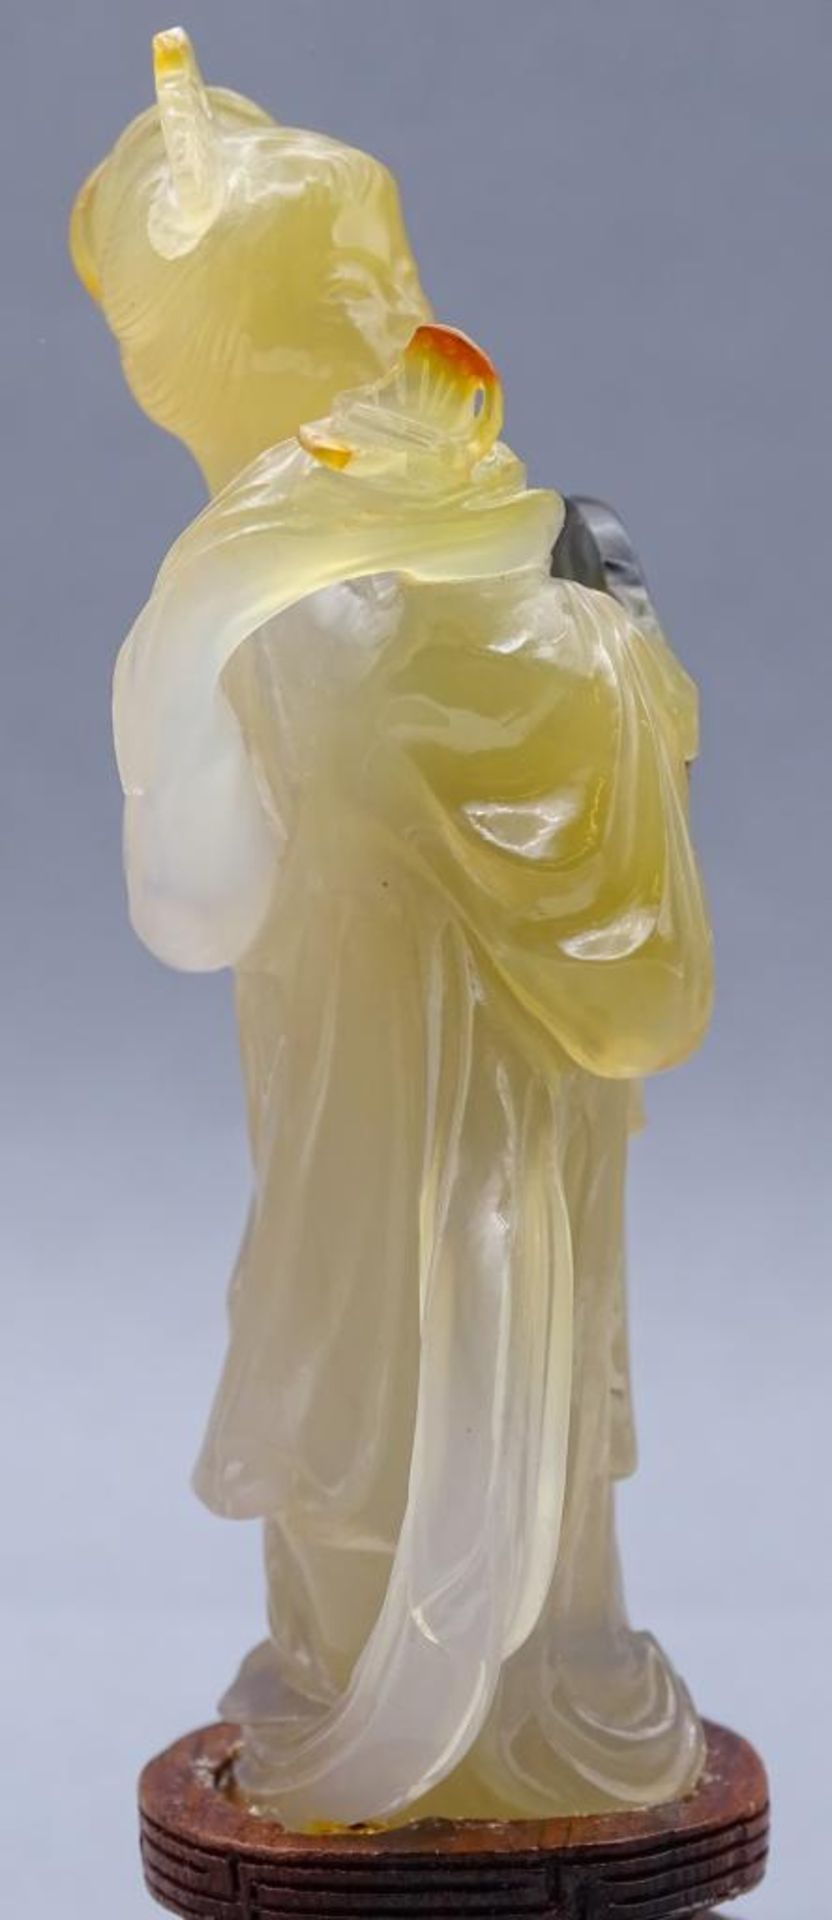 gelbe Jadeschnitzerei, Chinesin mit Fächer auf Holzsockel, China, 18/19. Jhd? , H-ca. 14 cm, rechte - Bild 5 aus 7